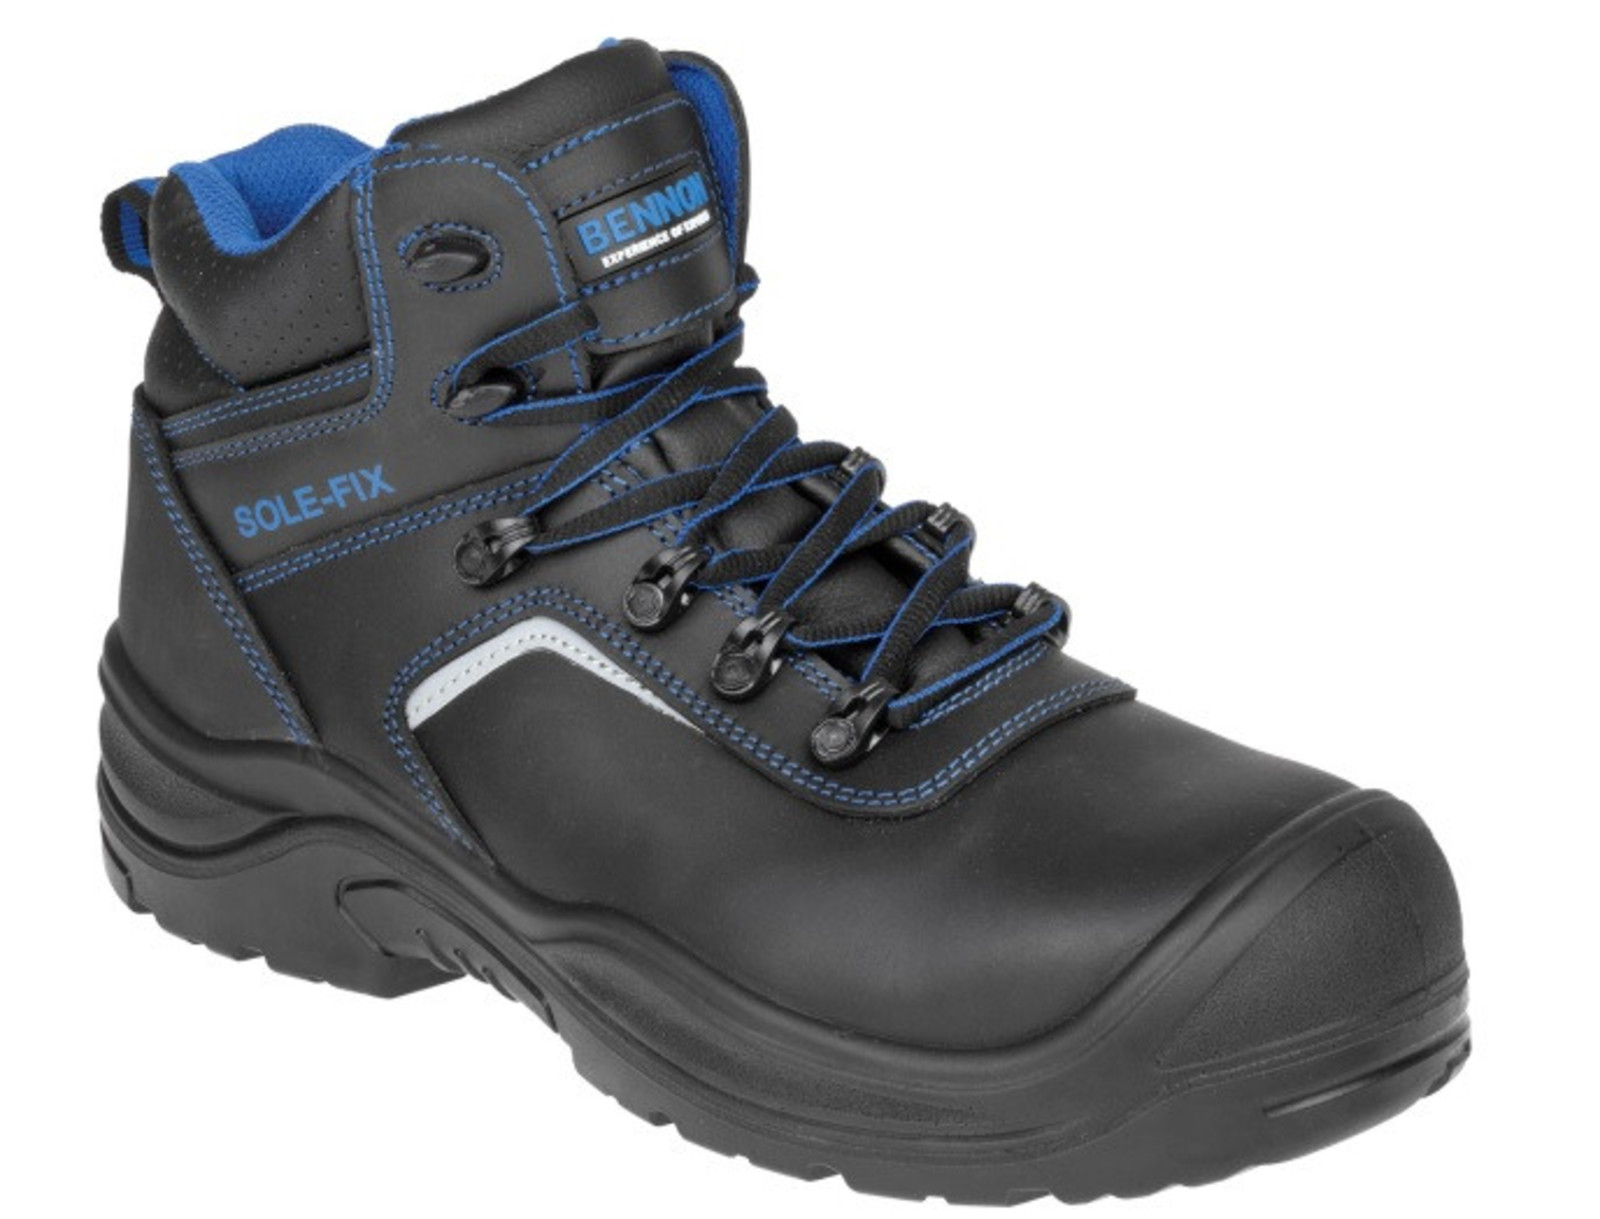 Bezpečnostná obuv Bennon Raptor S3 - veľkosť: 44, farba: čierna/modrá